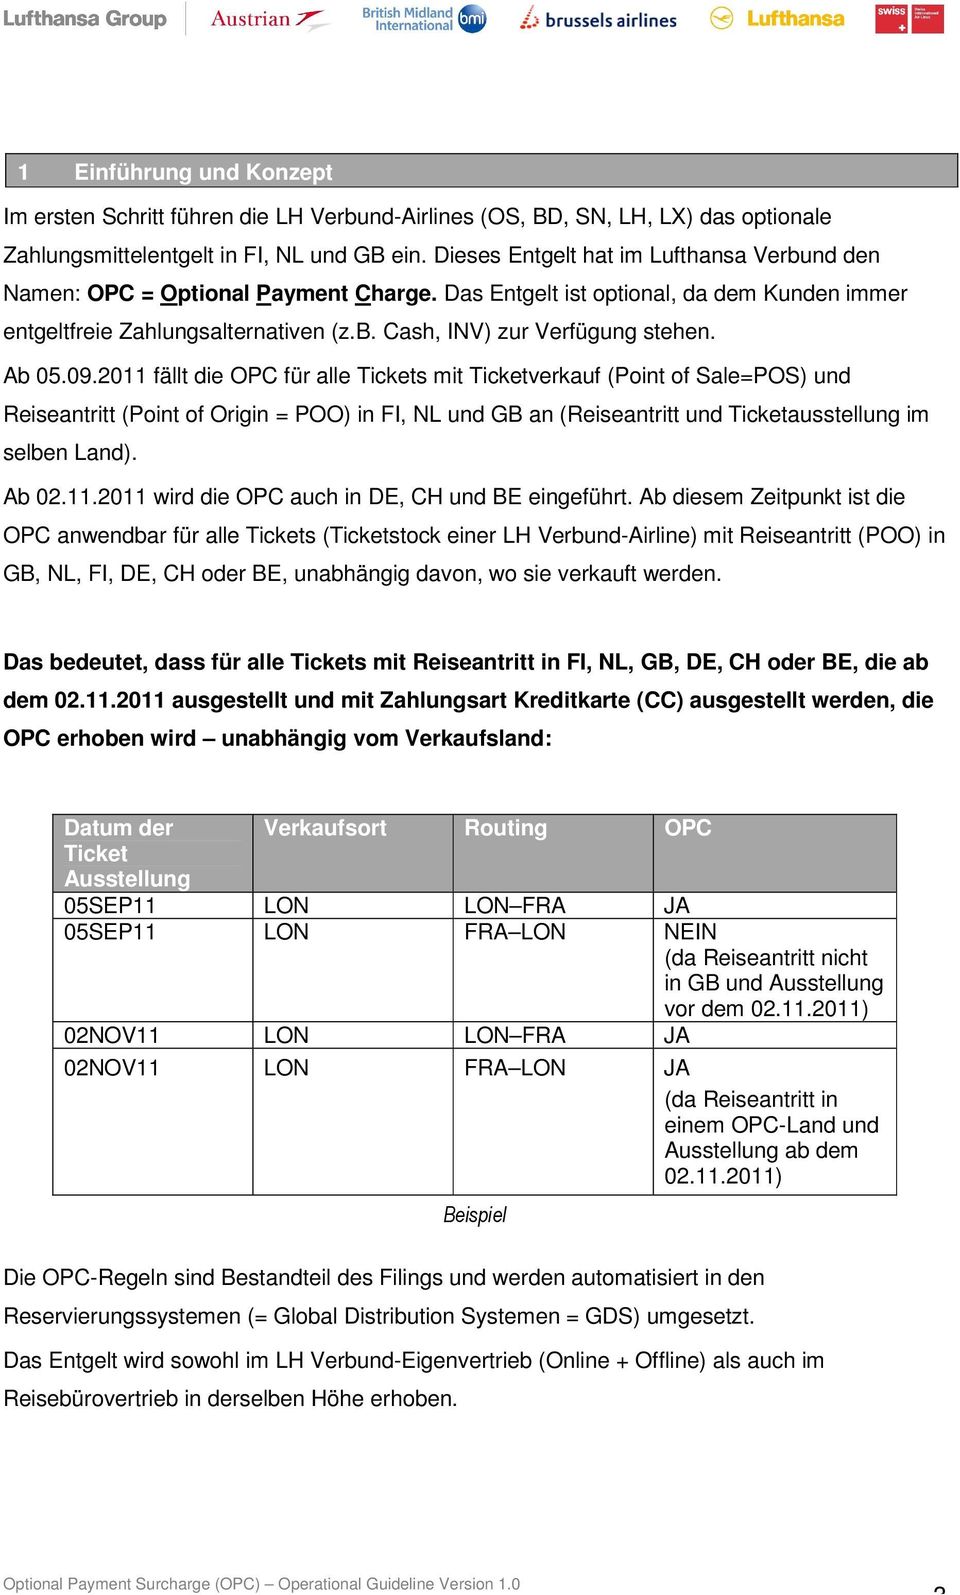 Ab 05.09.2011 fällt die OPC für alle Tickets mit Ticketverkauf (Point of Sale=POS) und Reiseantritt (Point of Origin = POO) in FI, NL und GB an (Reiseantritt und Ticketausstellung im selben Land).